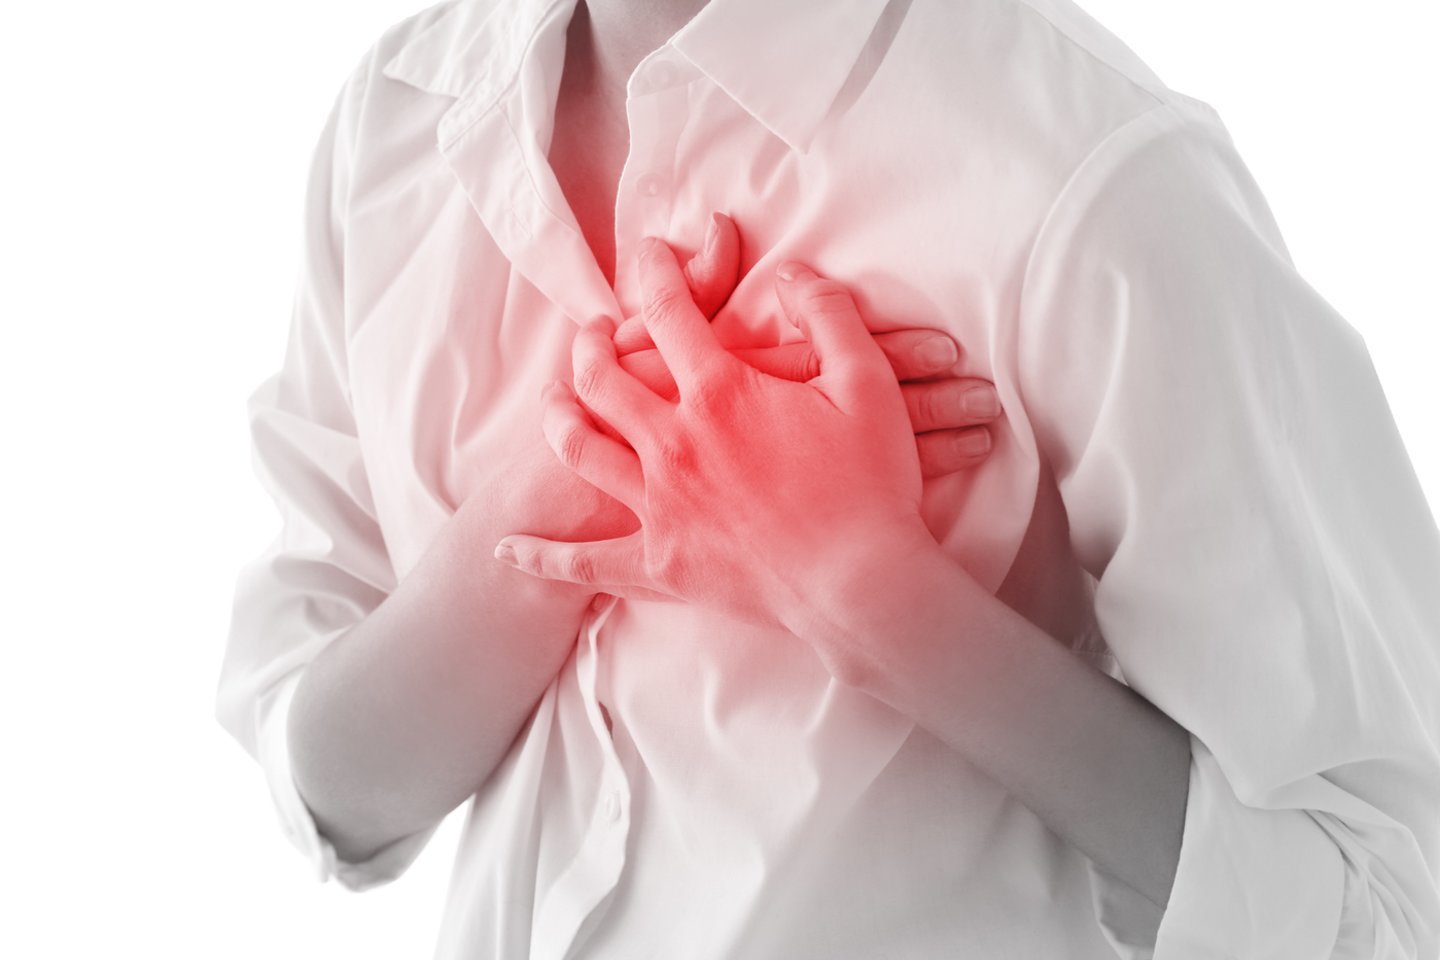 Širdies ir kraujagyslių sveikata<br>123rf.com asociatyvi nuotr.